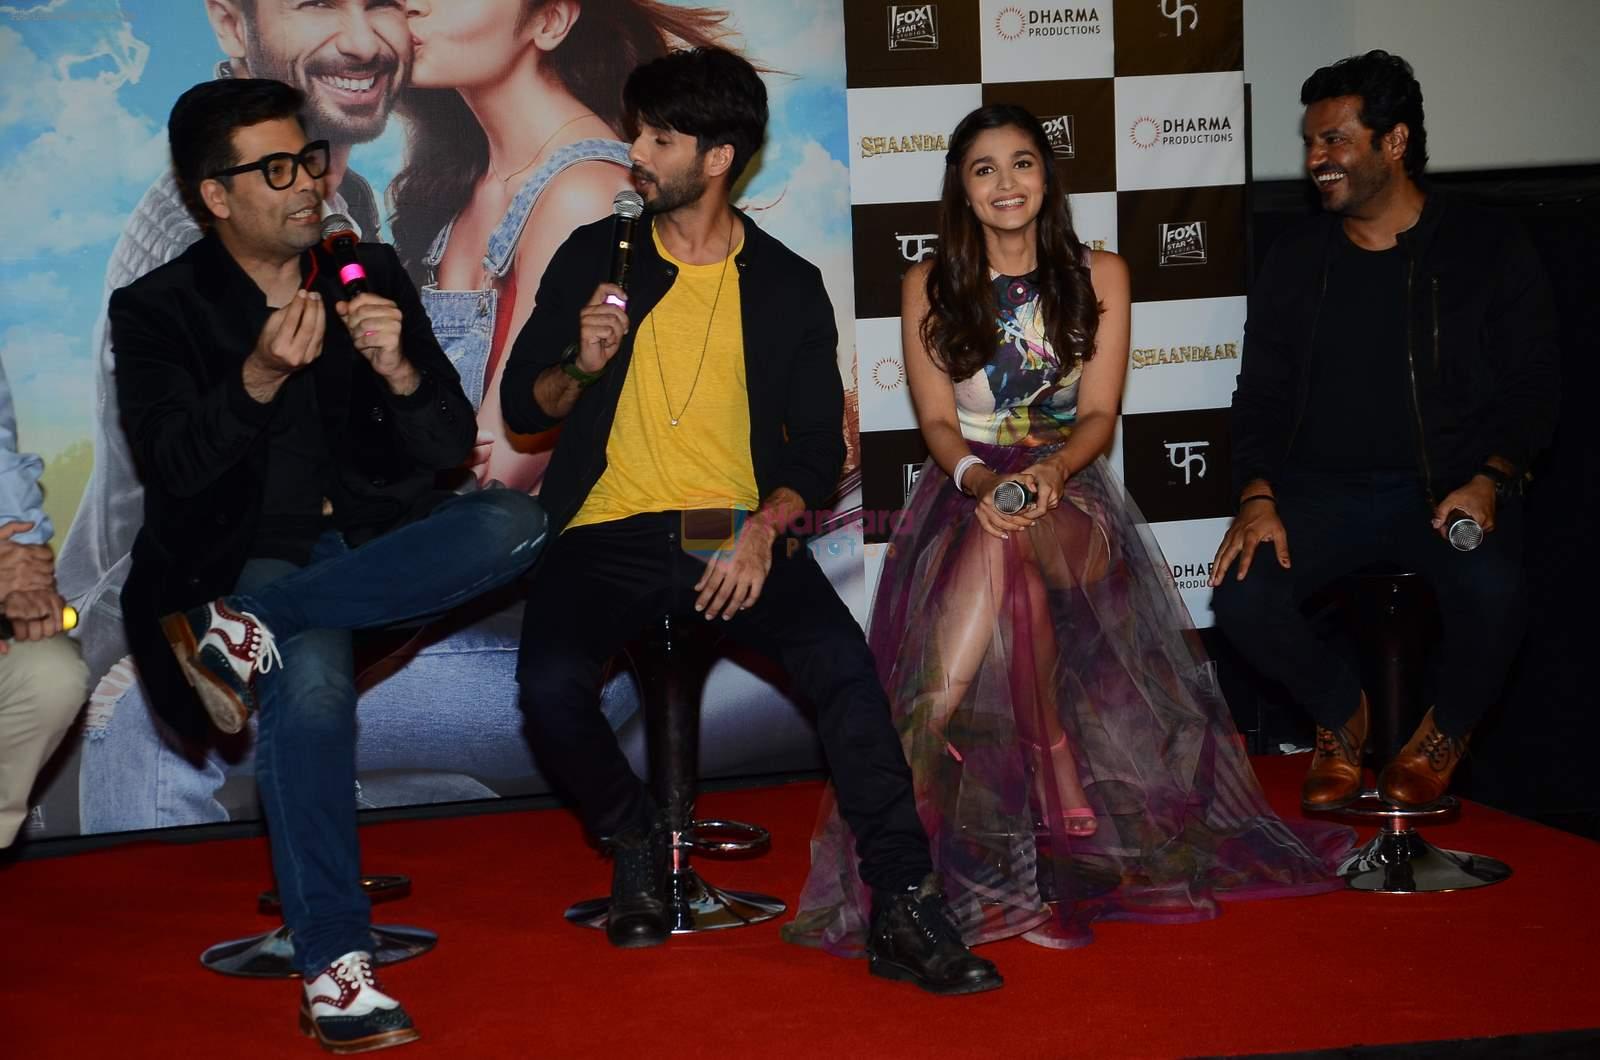 Shahid Kapoor, Alia Bhatt, Karan Johar, Vikas Bahl at Trailer Launch of Shandaar in PVR on 11th Aug 2015